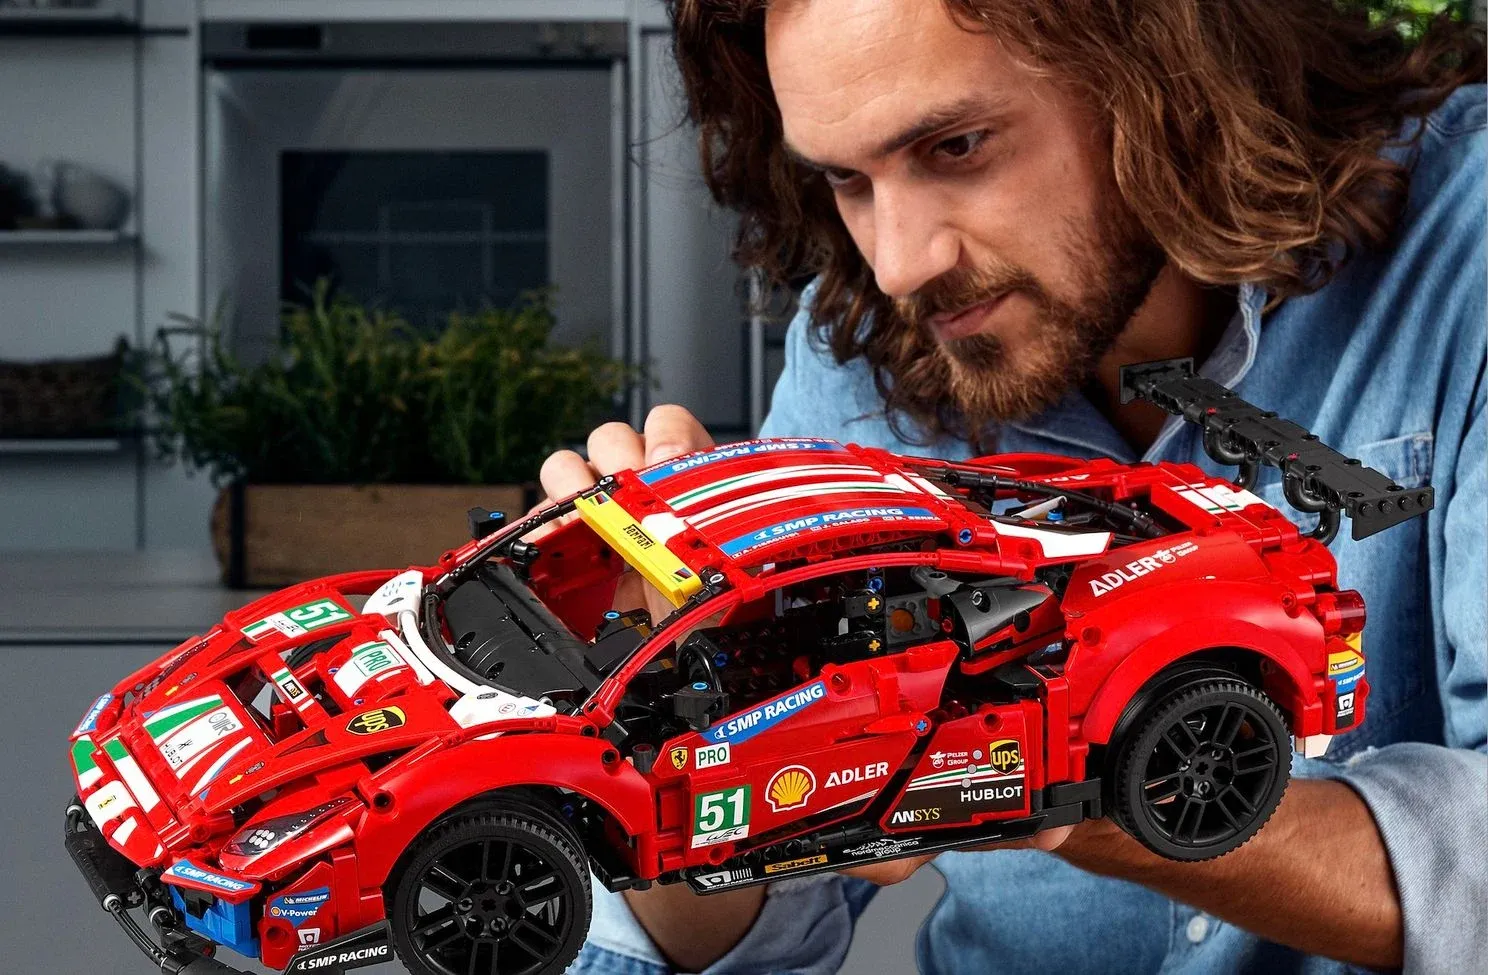 Deze 10 waanzinnige 18+ bouwsets zijn een natte droom voor volwassen LEGO-fans